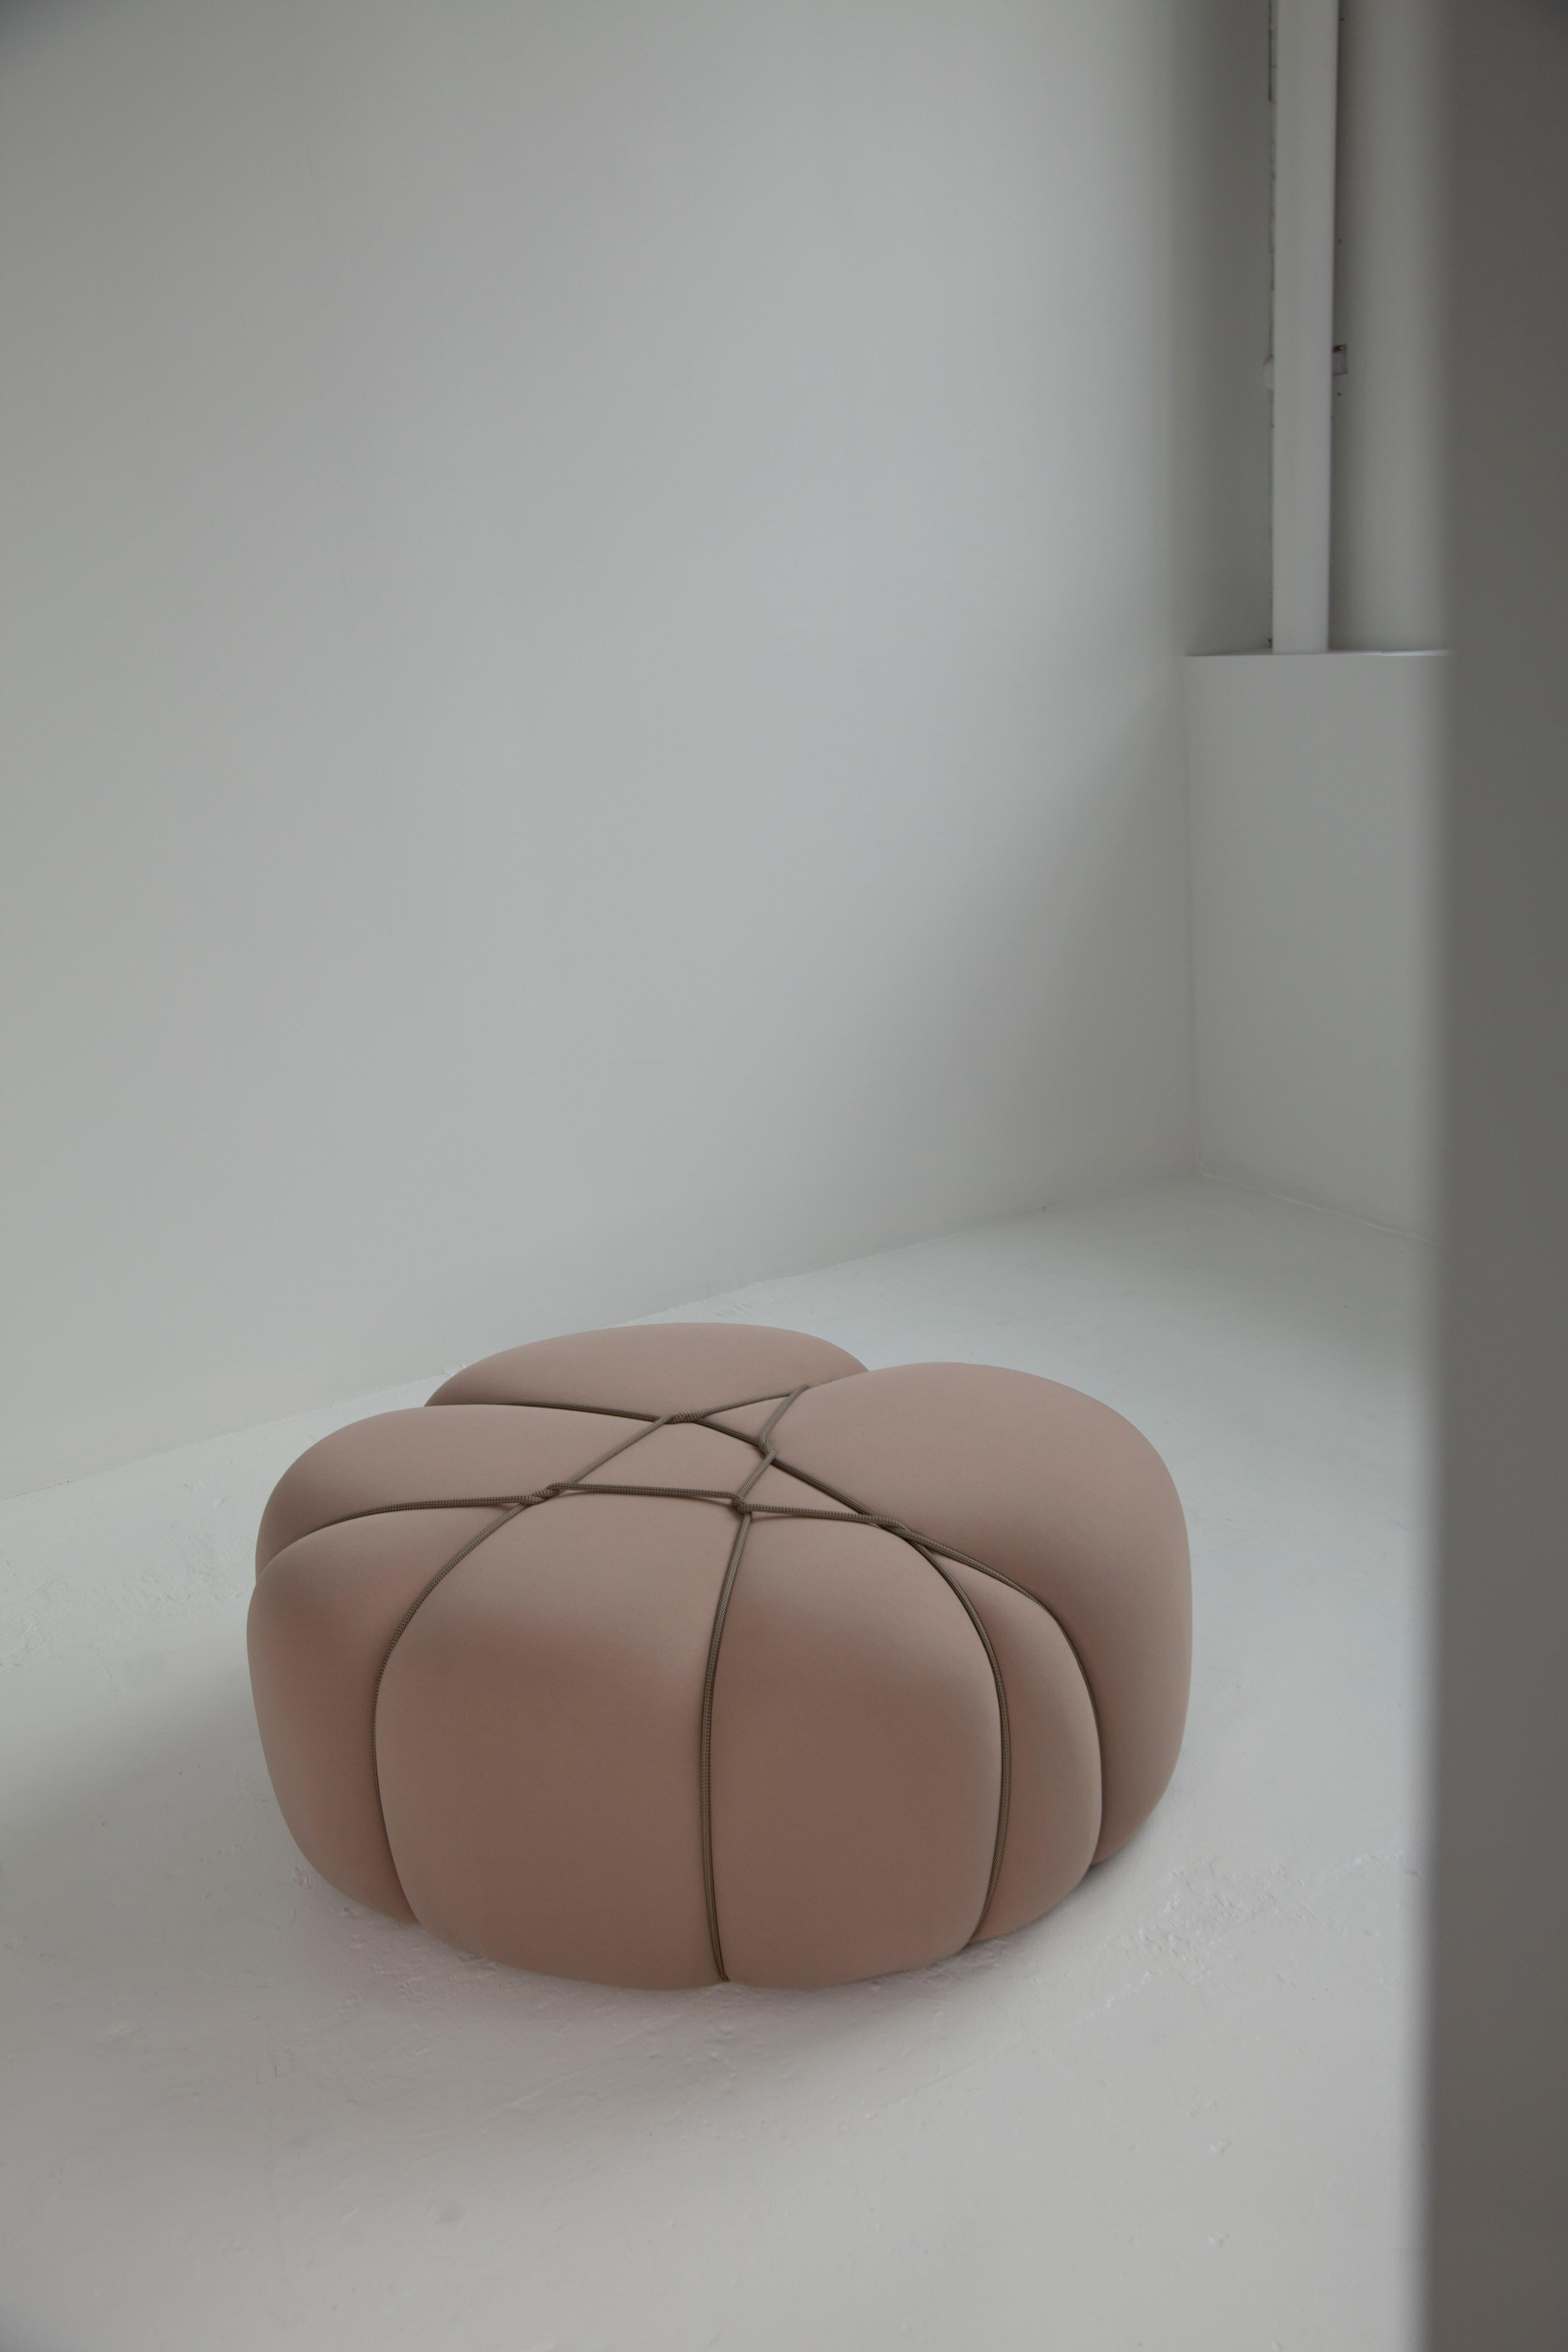 Die Poufs sind eine Form von modularen Möbeln, die sowohl zum Entspannen als auch zum Sitzen gedacht sind. Sie bestehen aus weichem Schaumstoff, der mit einem dicken, elastischen Stoff überzogen ist, der alle sichtbaren Nähte verdeckt. Inspiriert